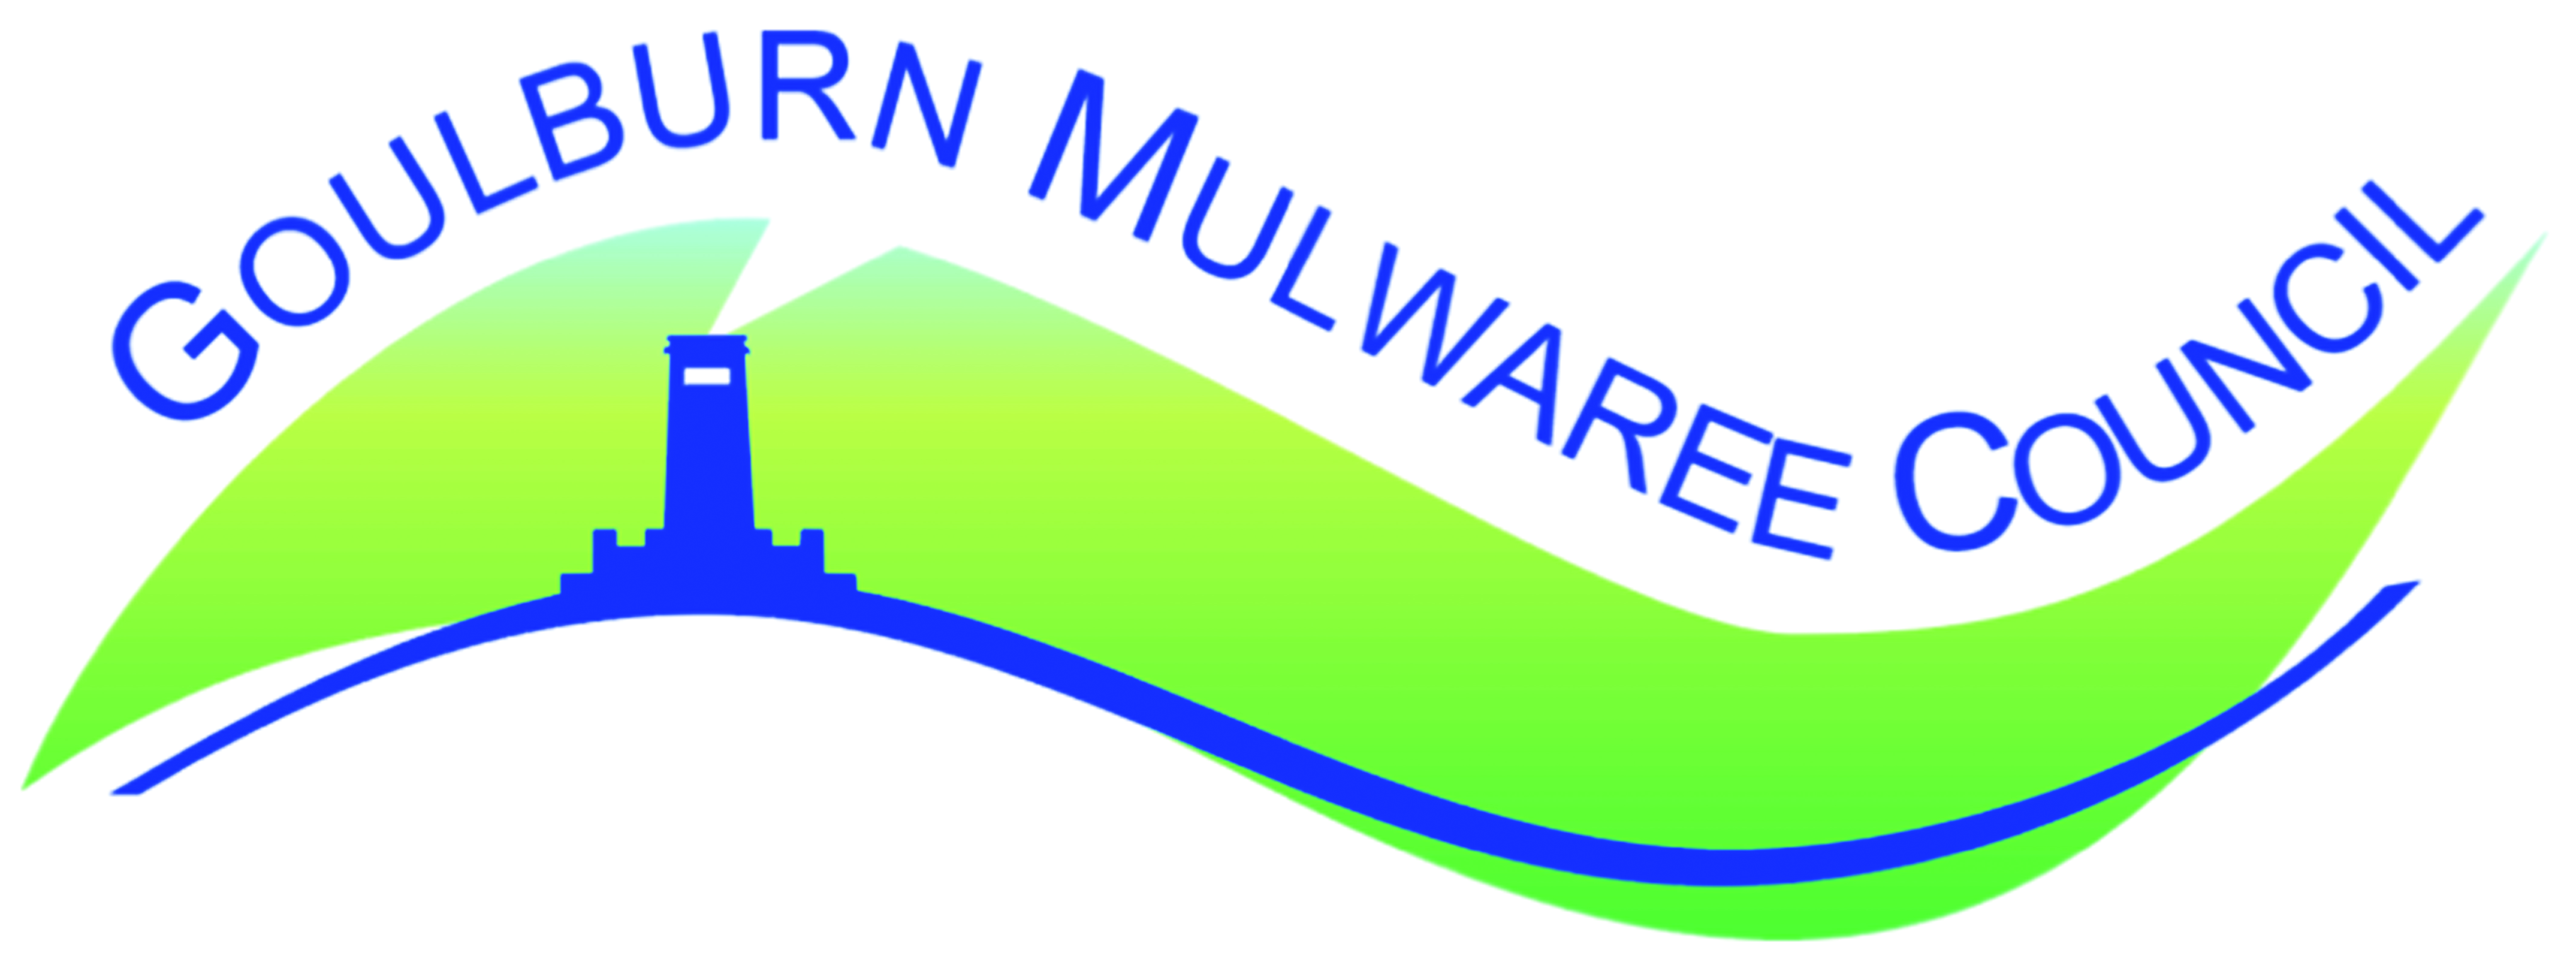 goldburn mulwaree council